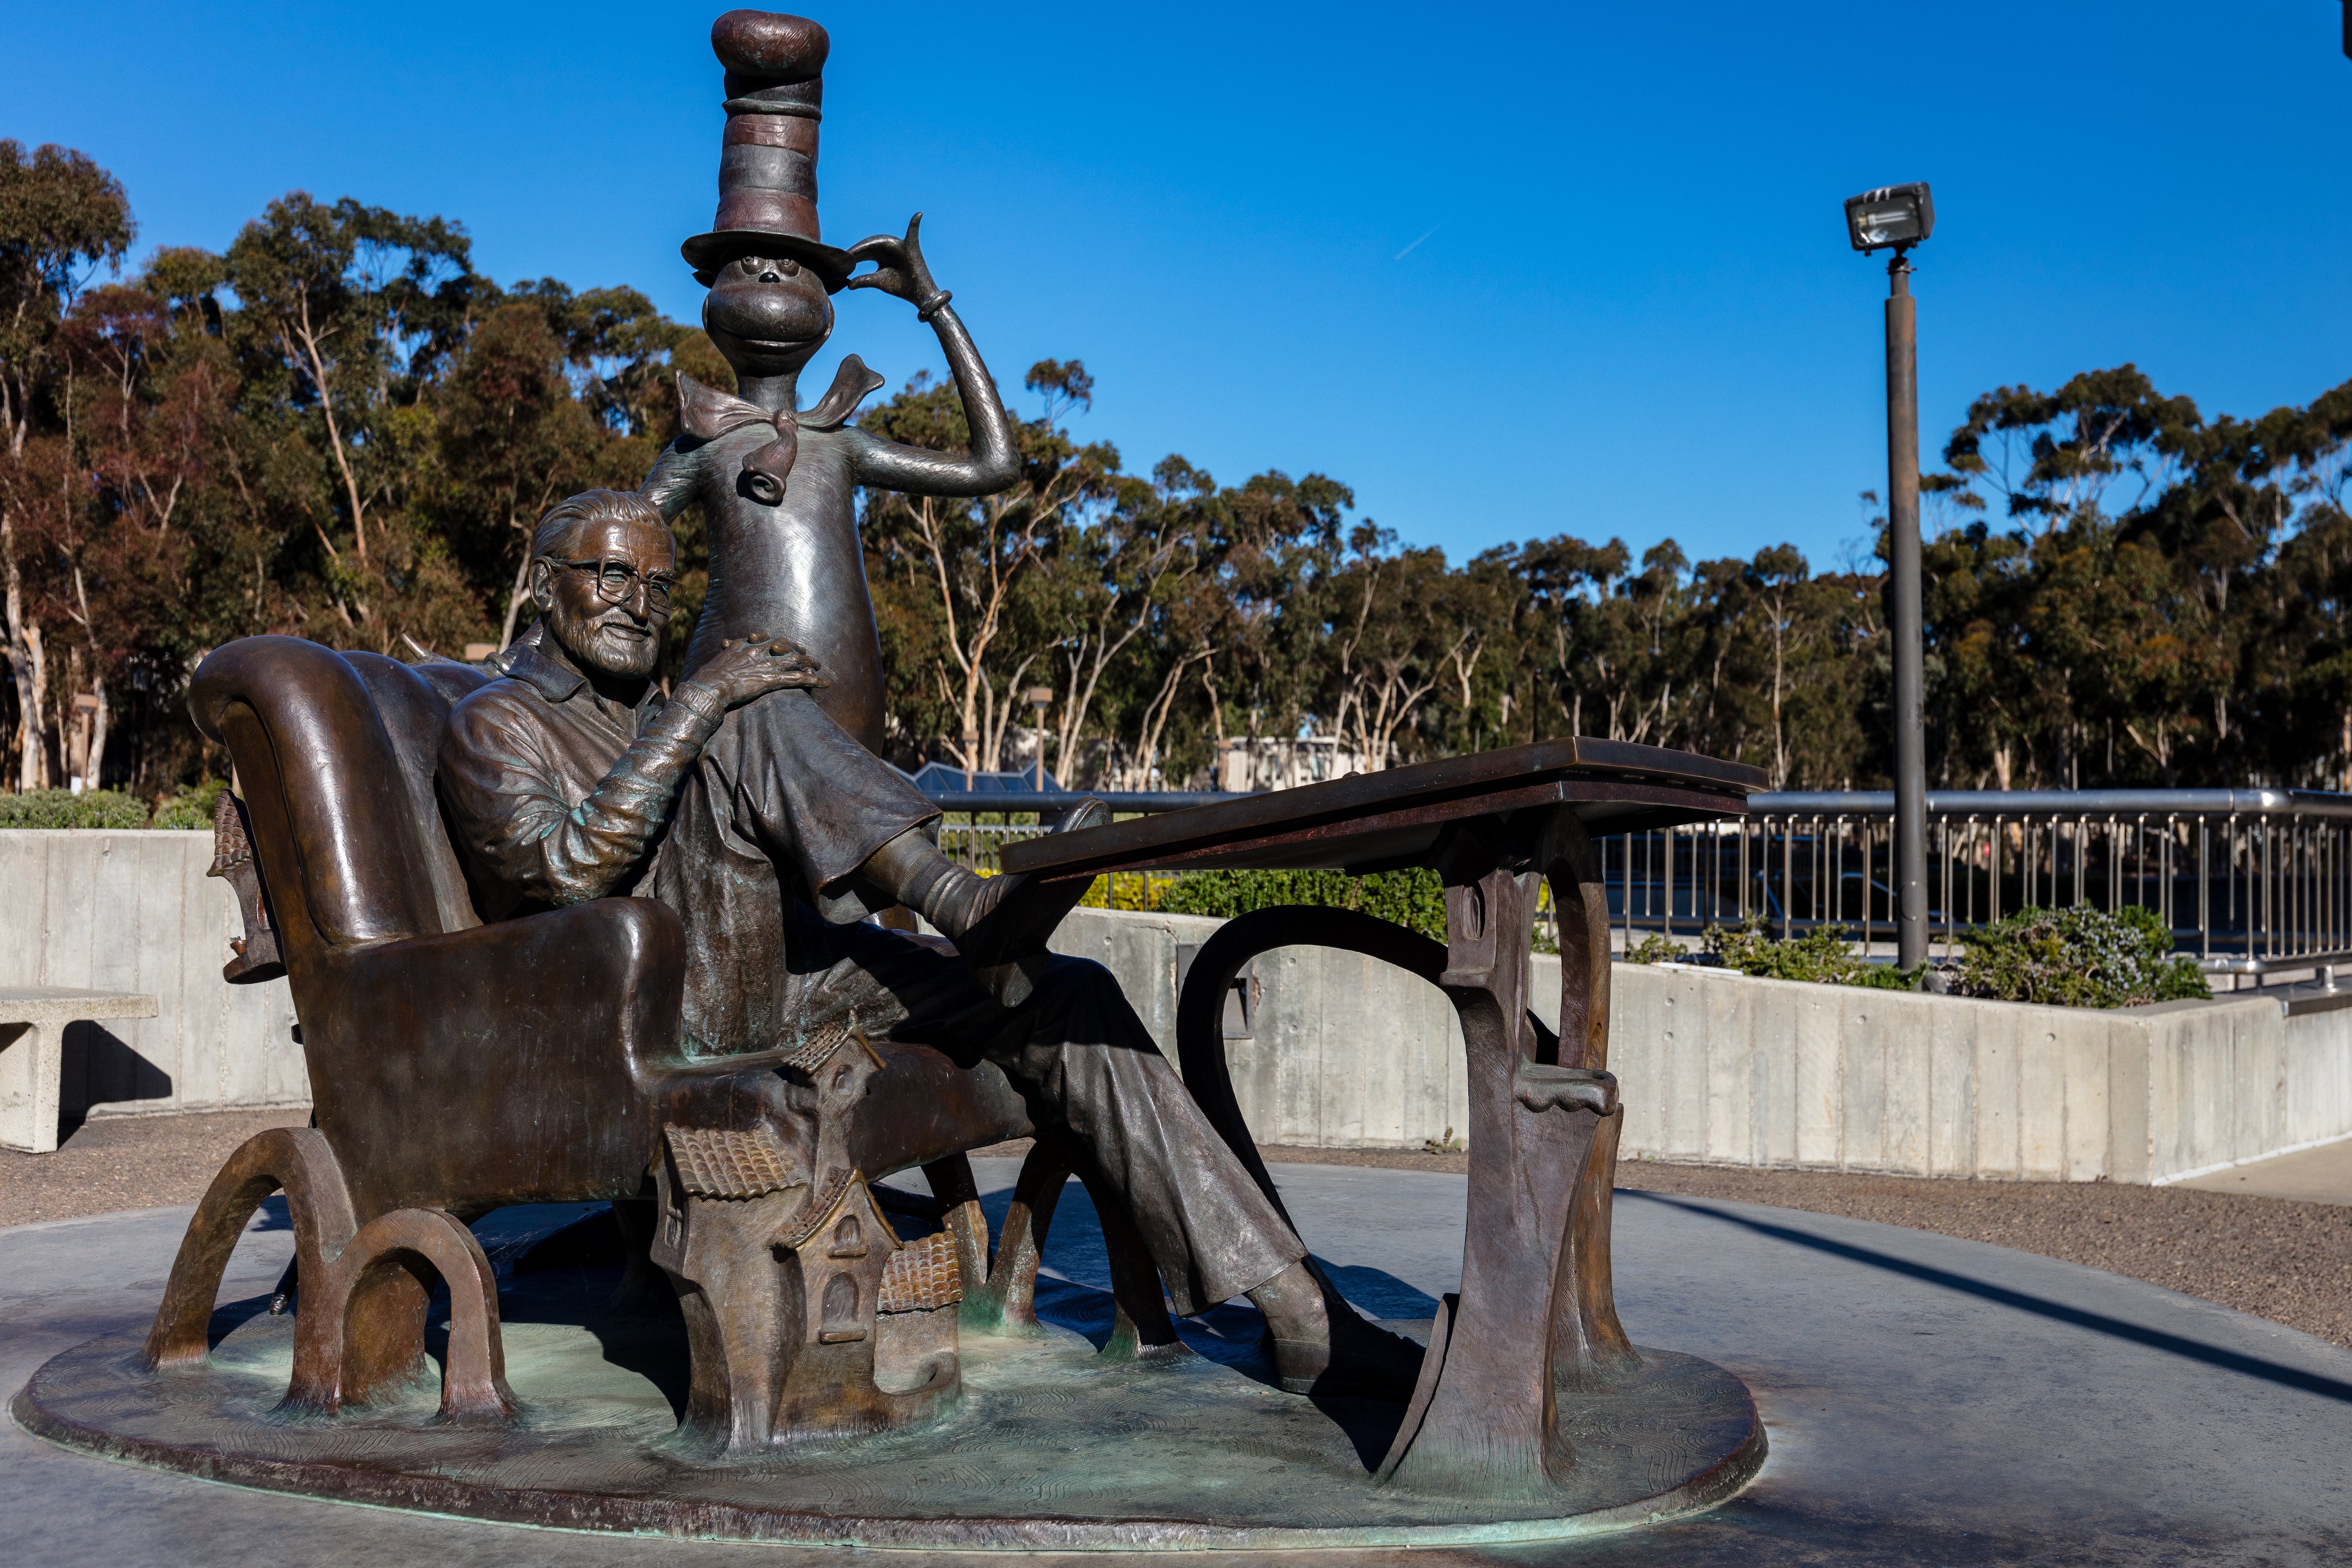 Dr. Seuss statue in a park